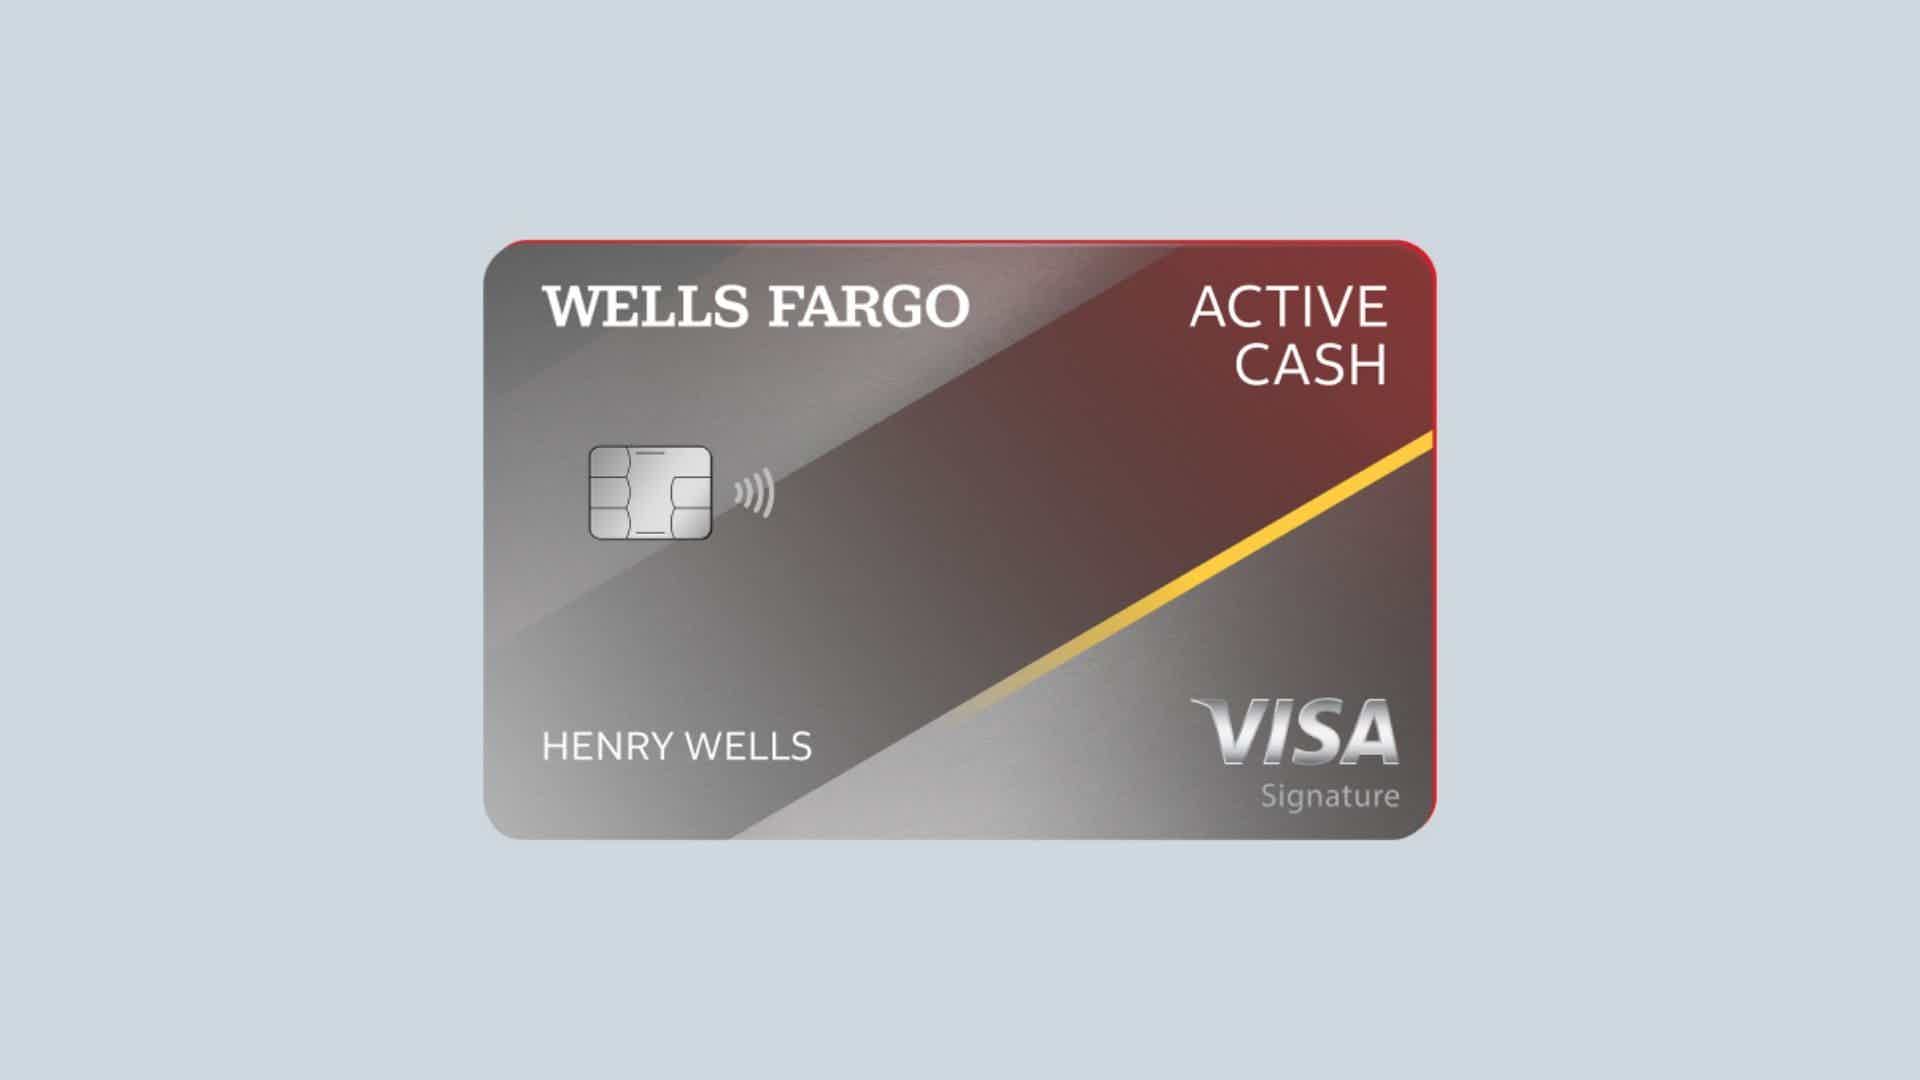 Como solicitar cartão Wells Fargo Active Cash? Fonte: Wells Fargo.